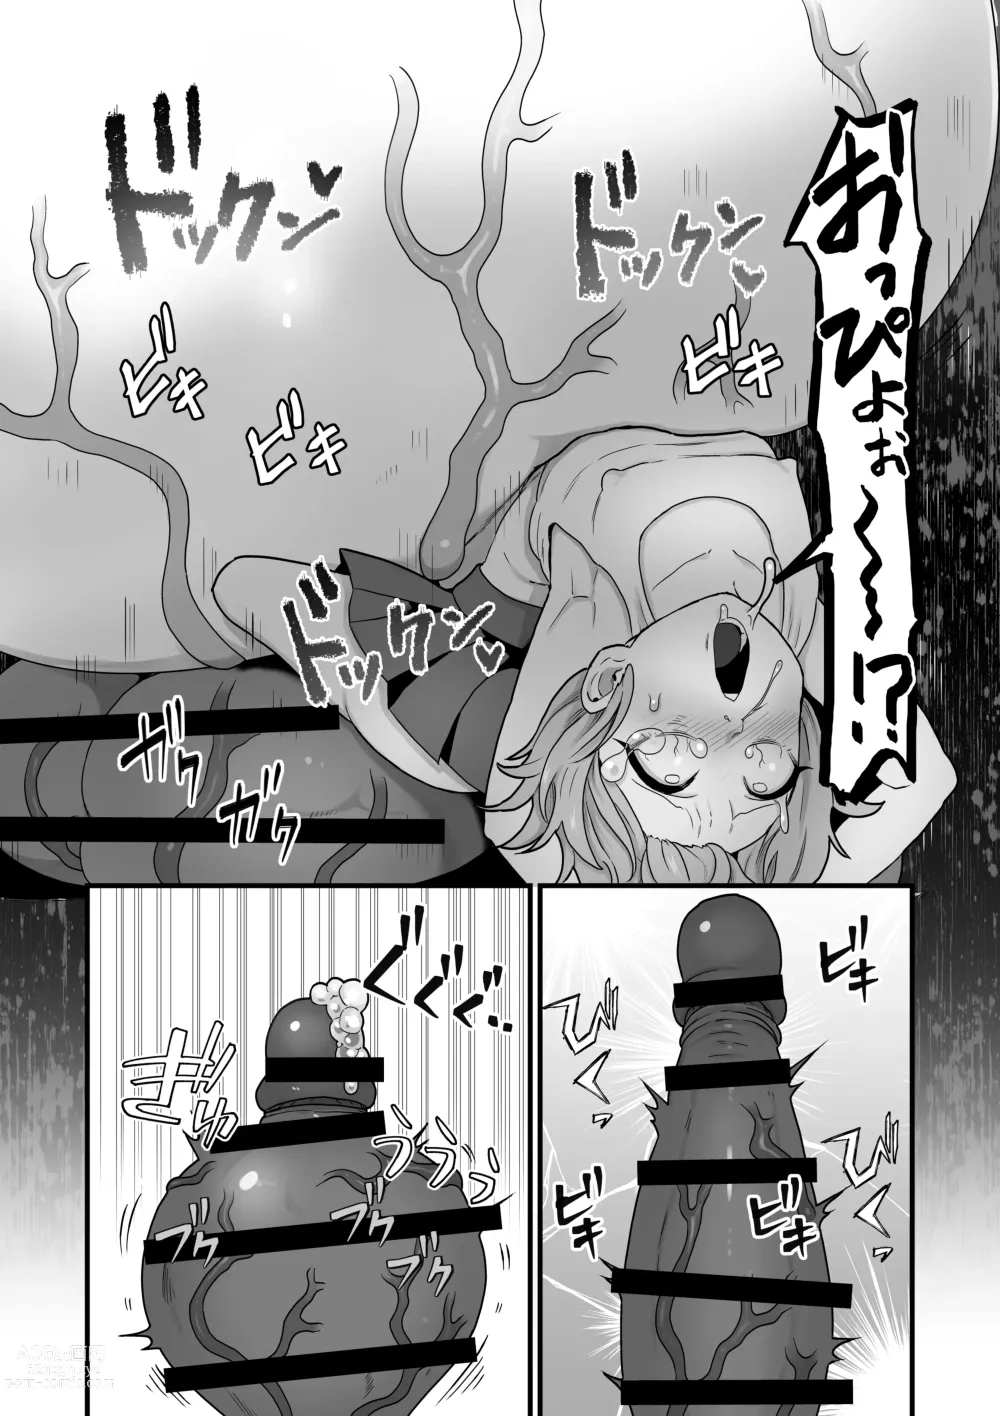 Page 65 of doujinshi Akuryo no jutai